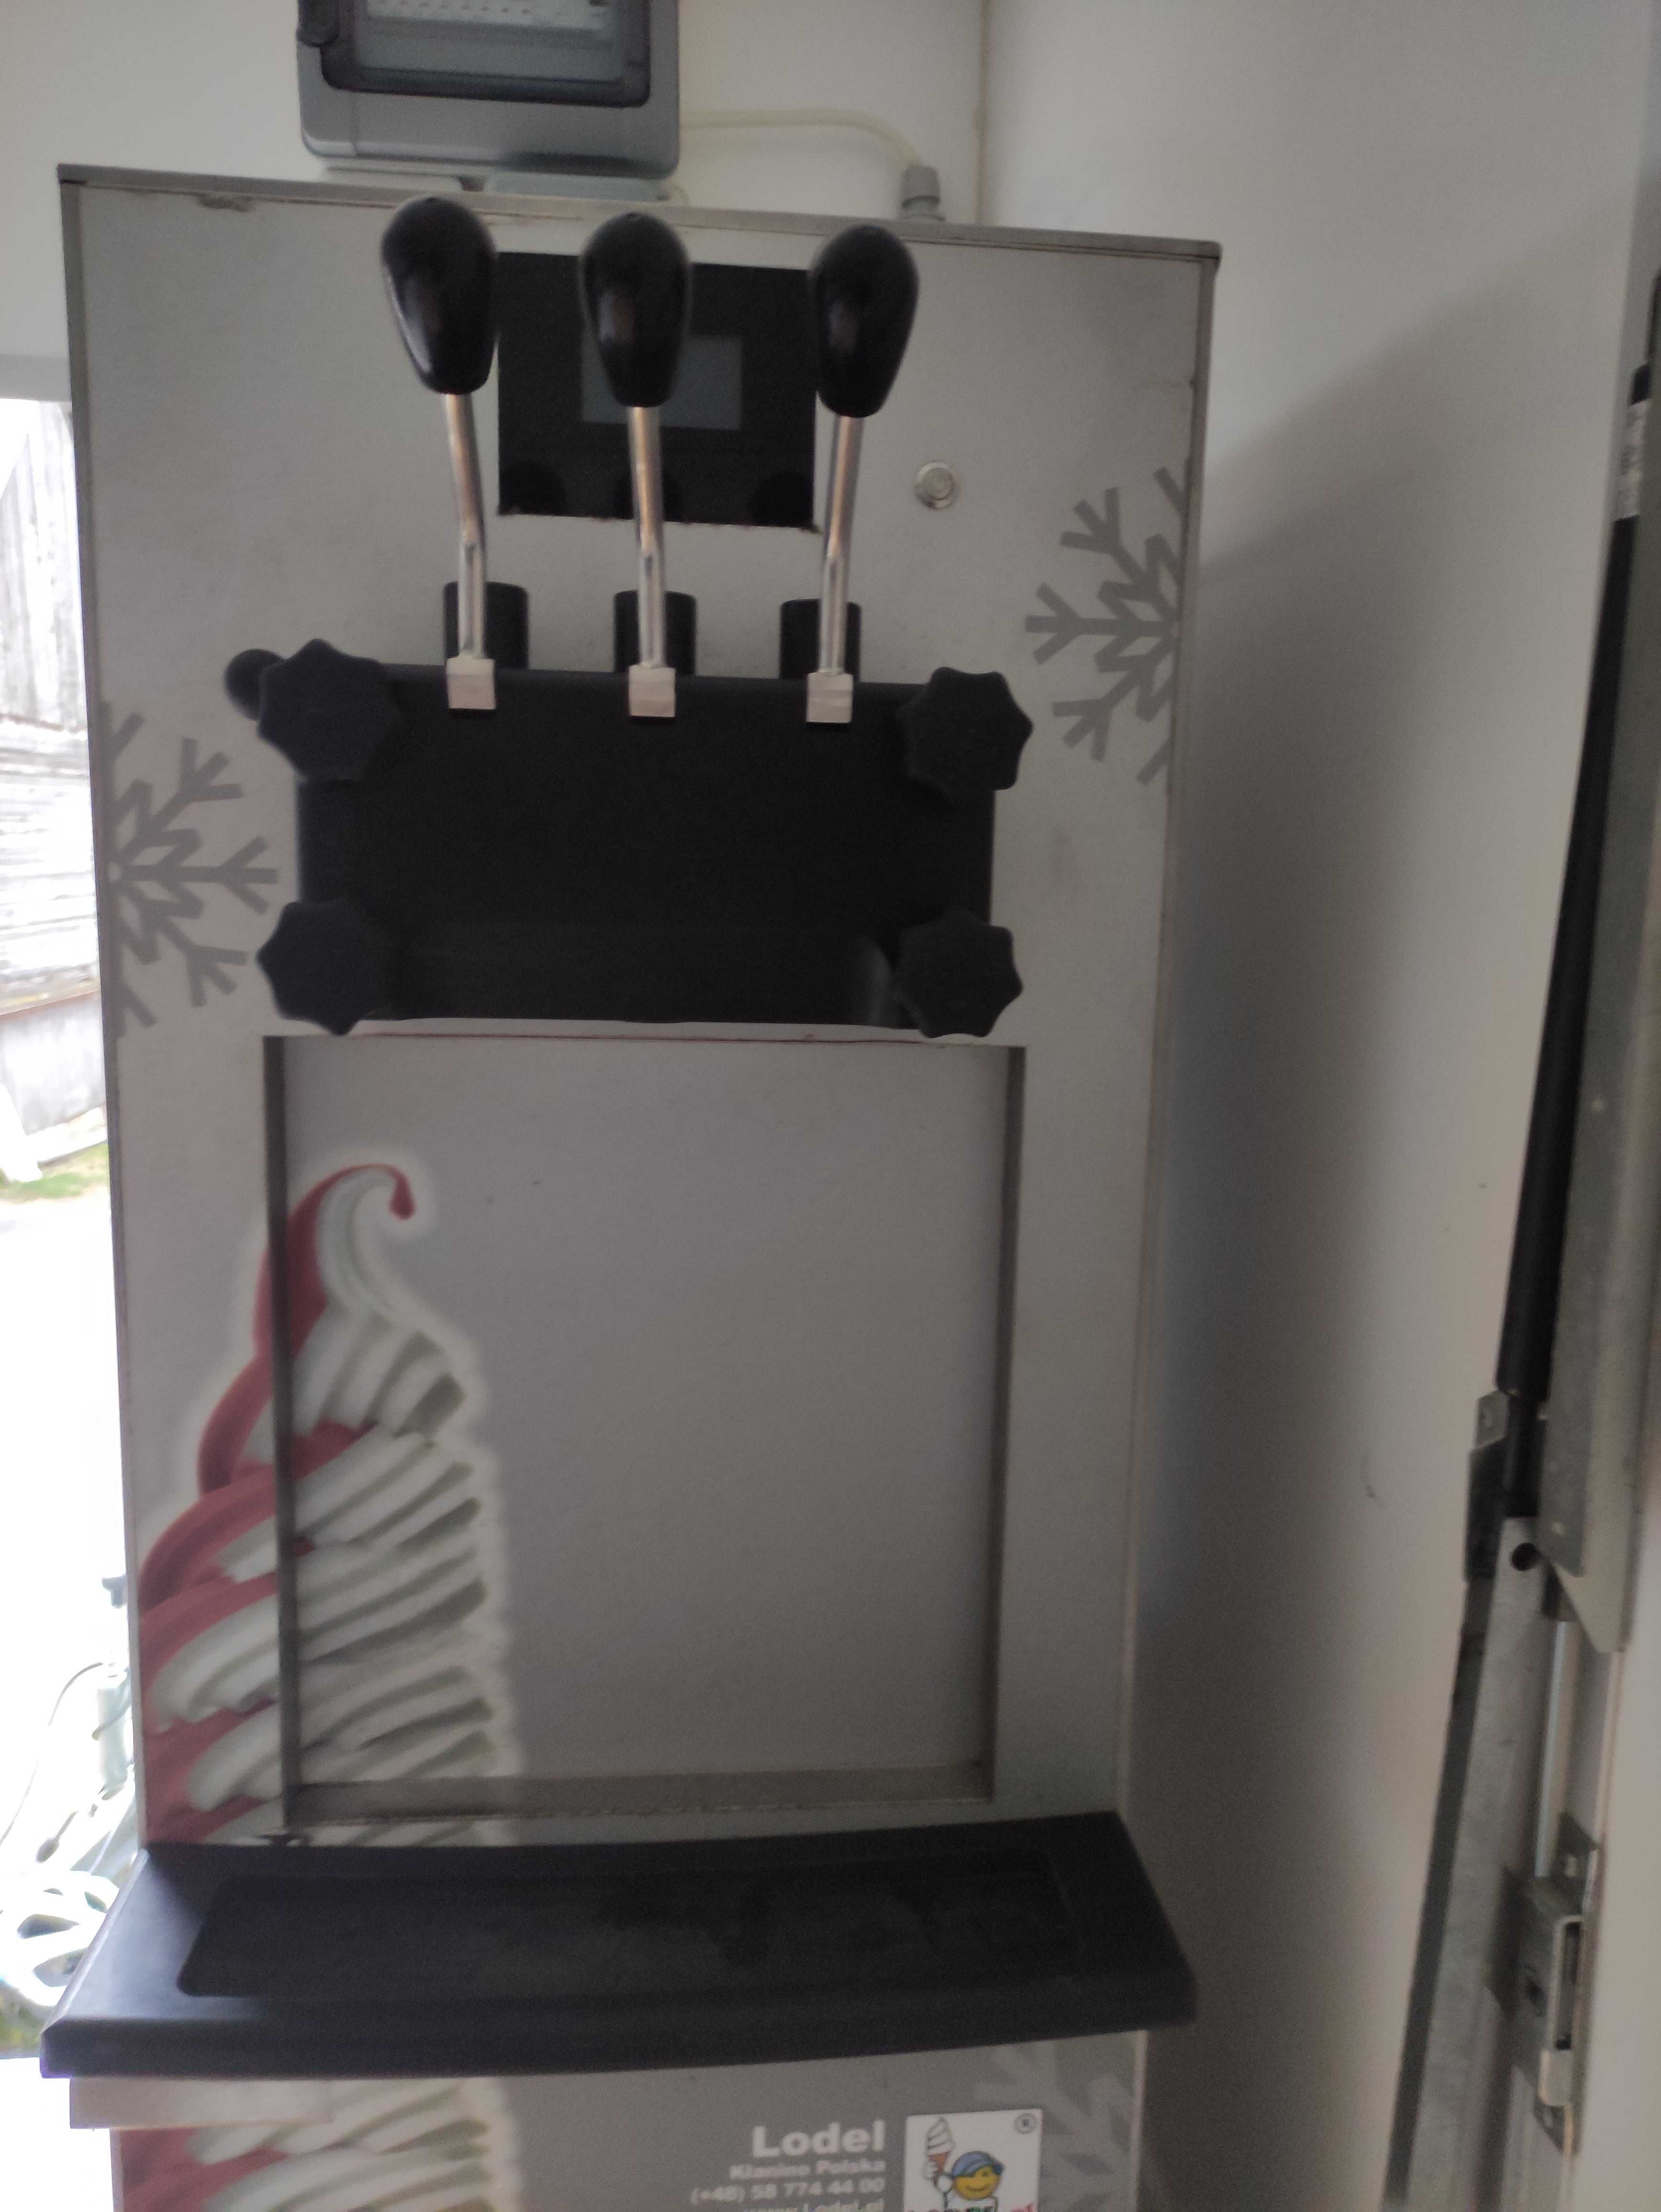 Automat do lodów świderków, firmy Lodel